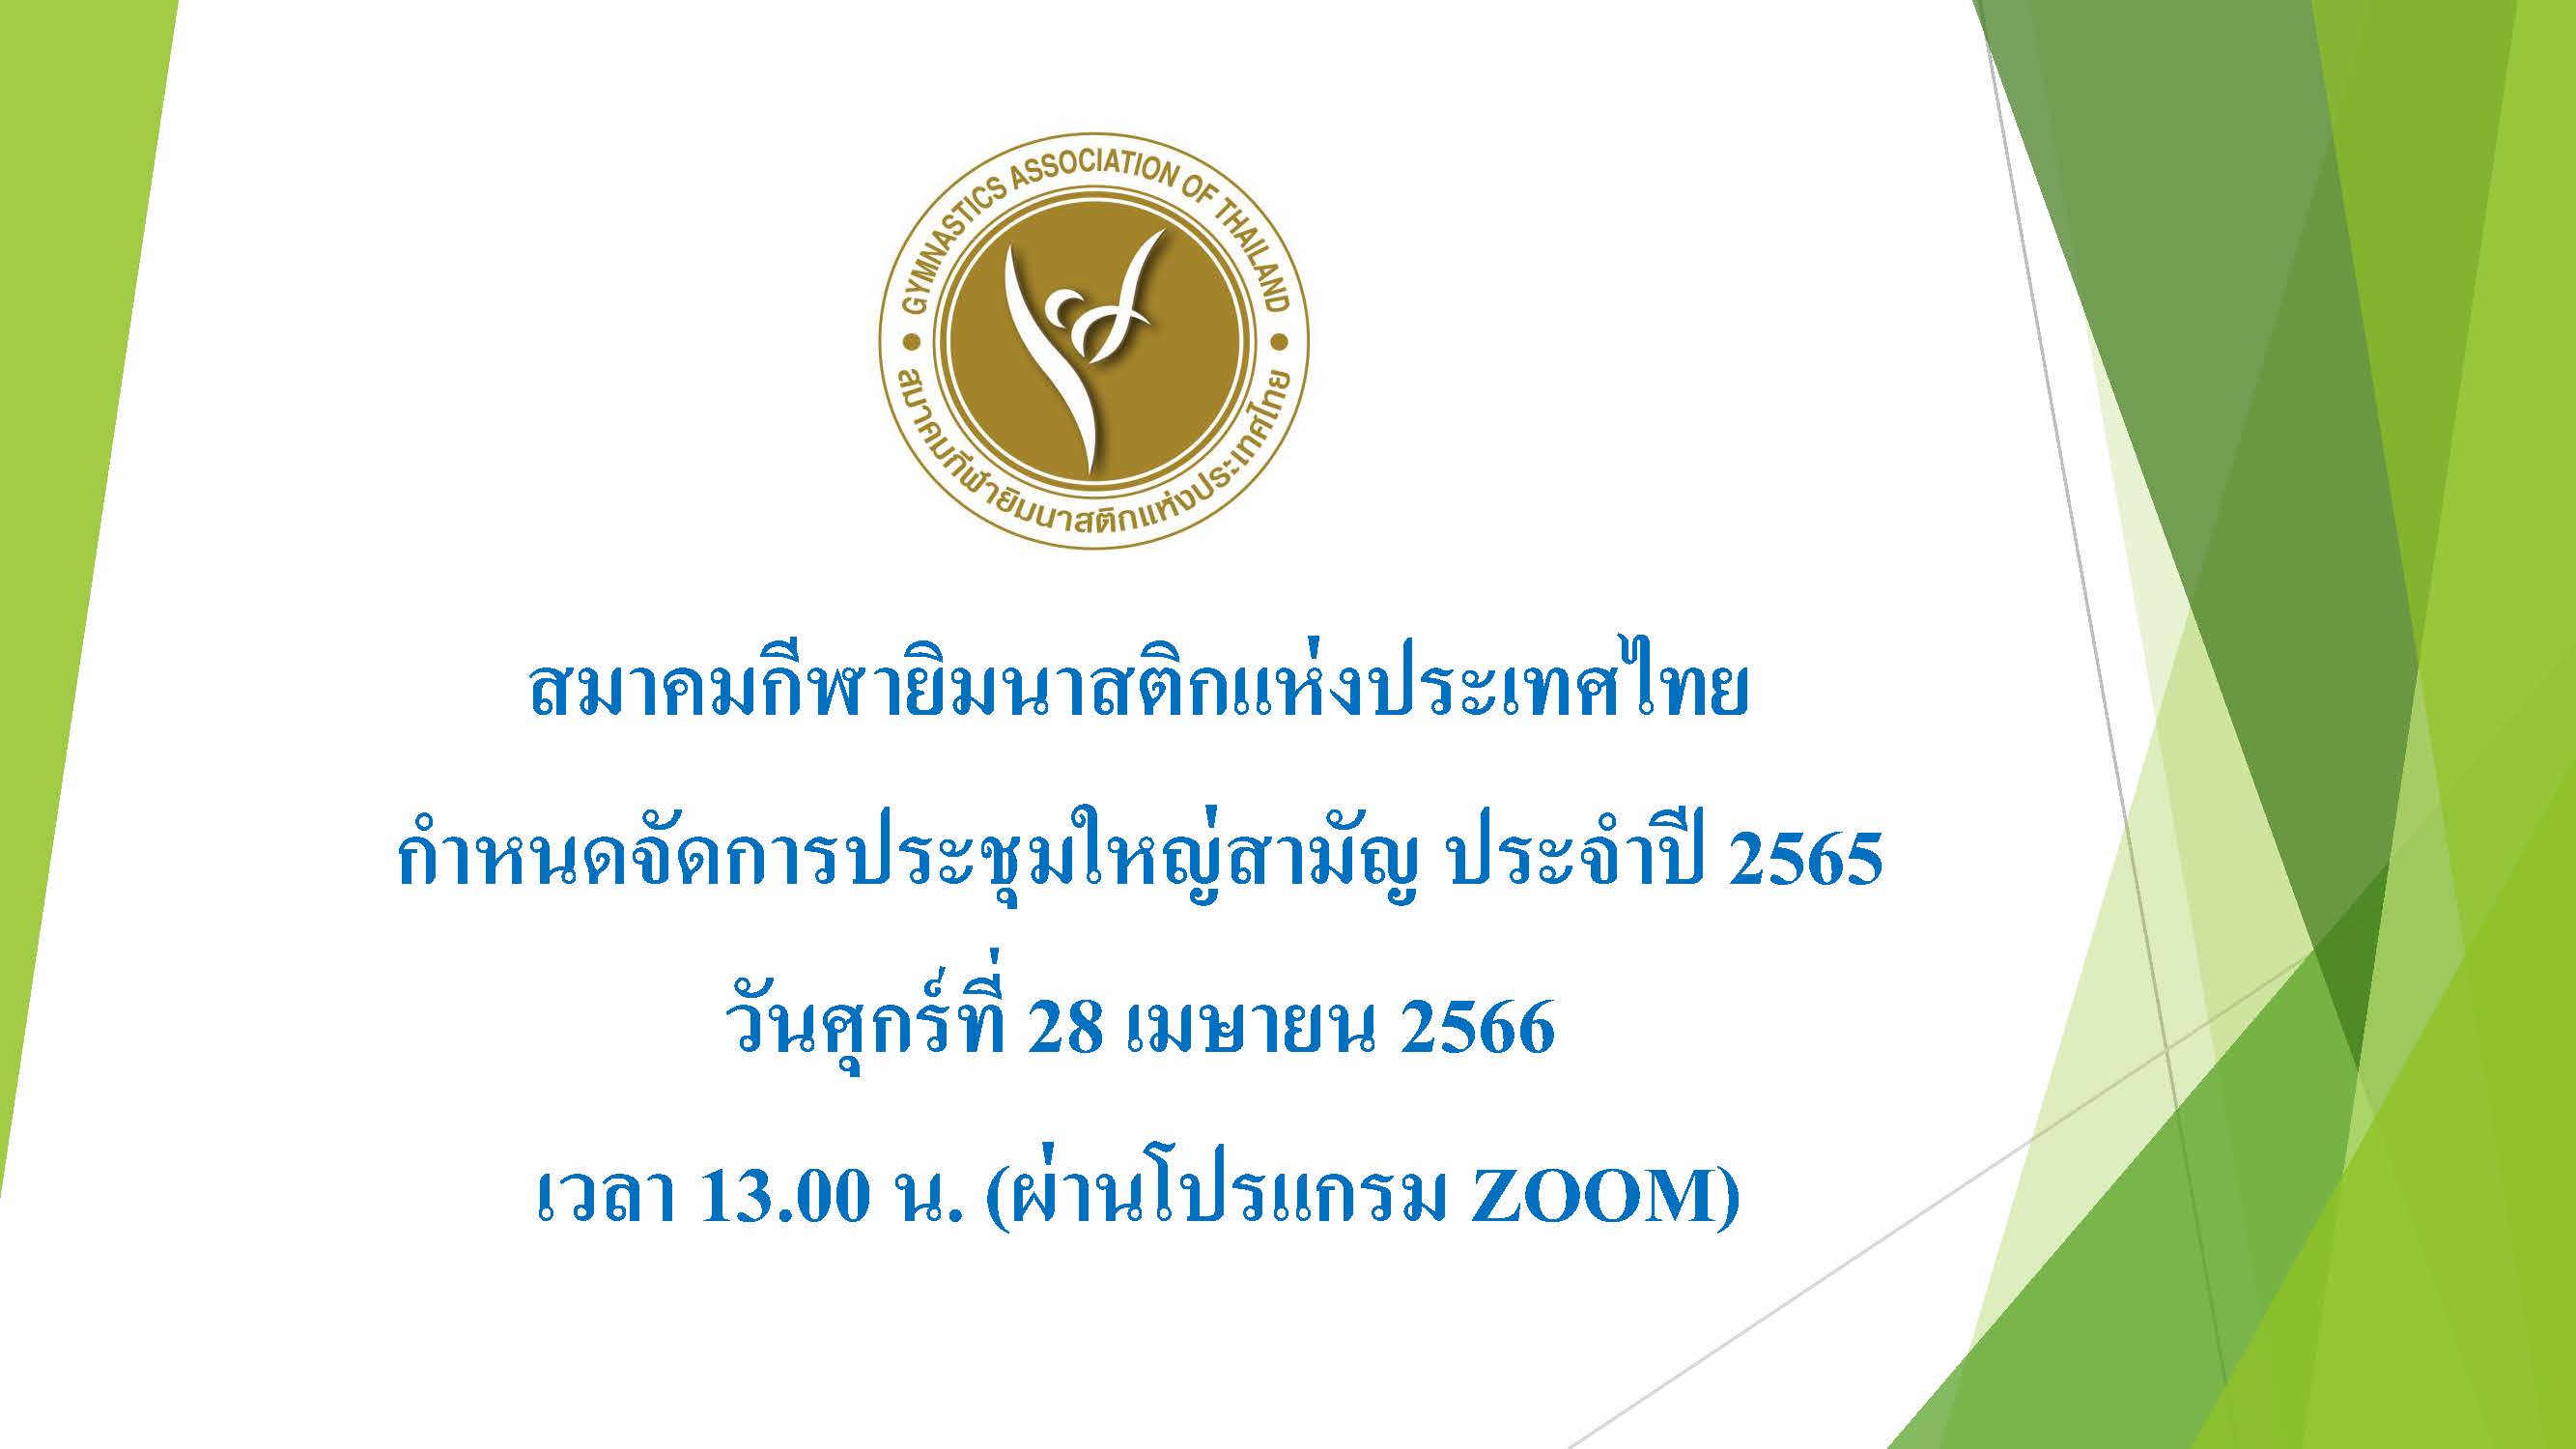 สมาคมยิมนาสติกแห่งประเทศไทยกำหนดจัดการประชุมใหญ่สามัญ ประจำปี 2565